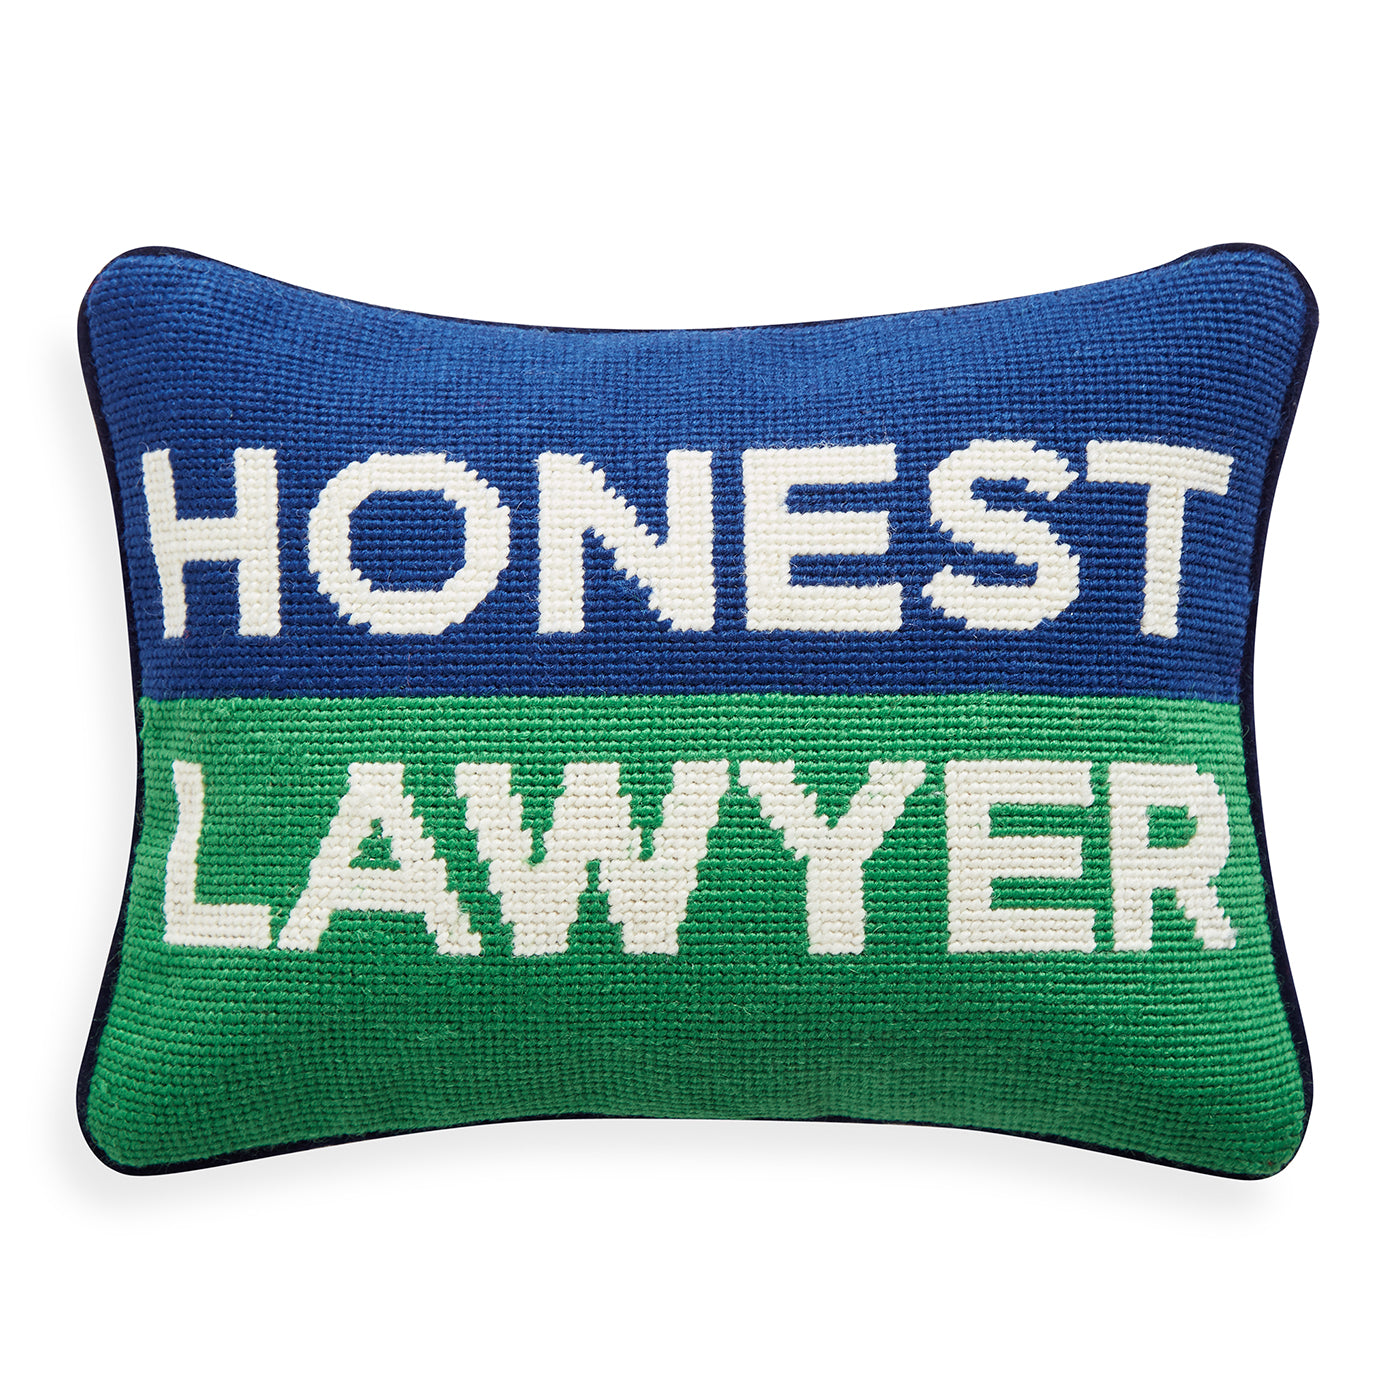 Honest Lawyer Needlepoint Cushion